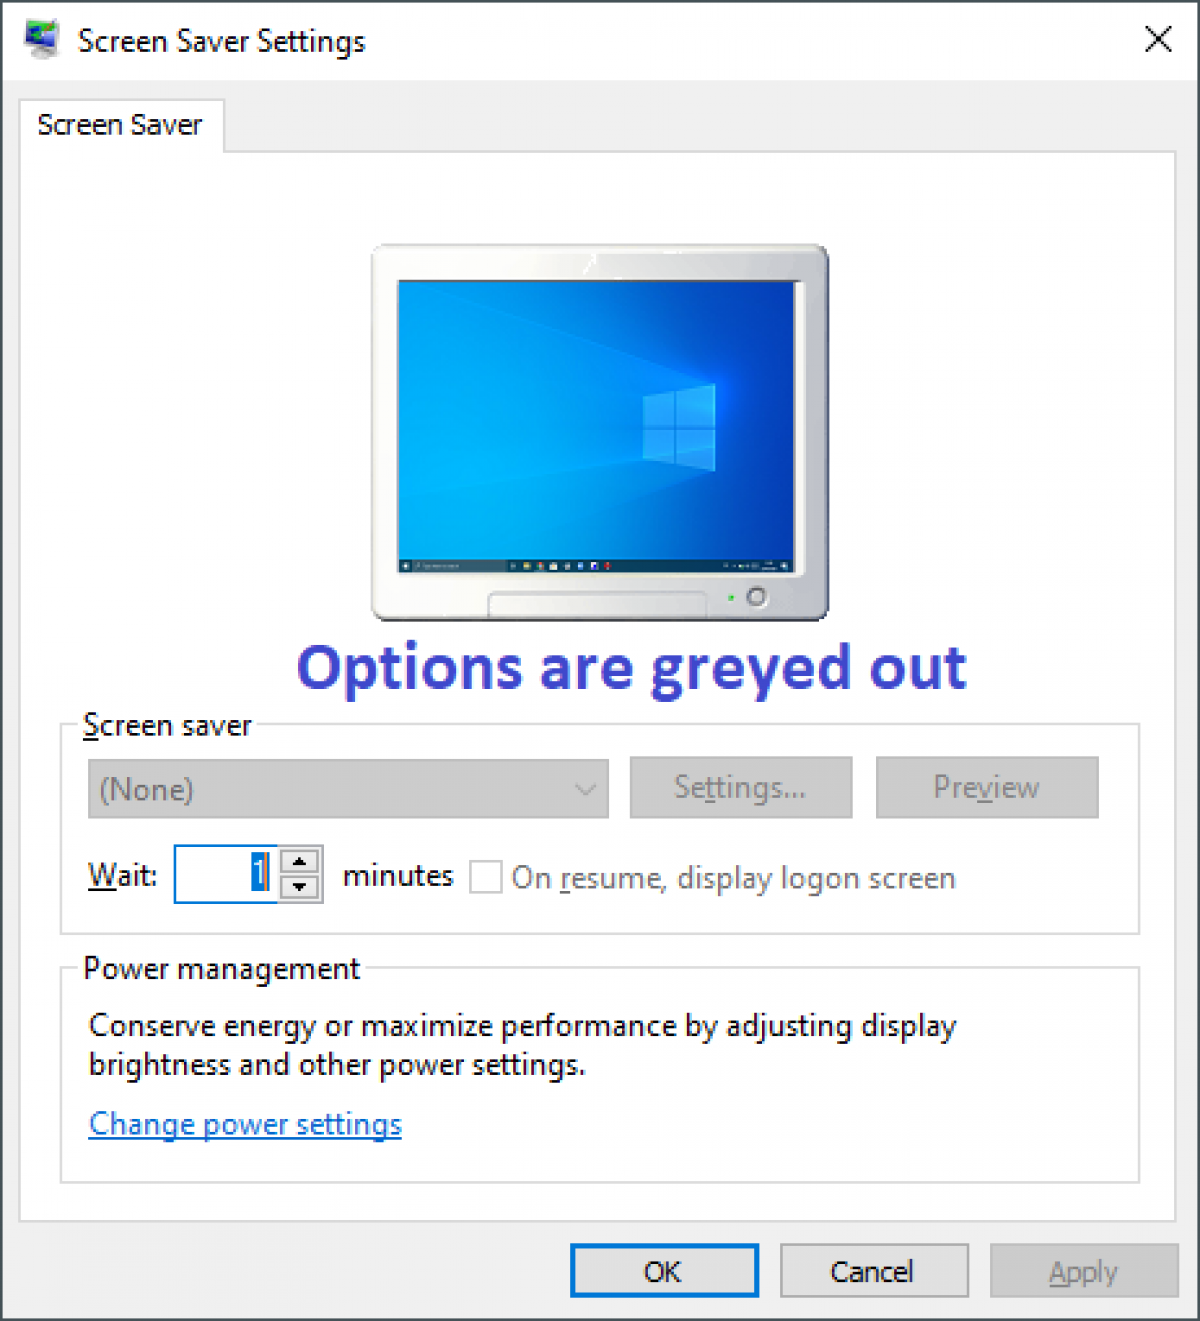 настройки заставки отображаются серым цветом на протяжении всего окна Windows 7